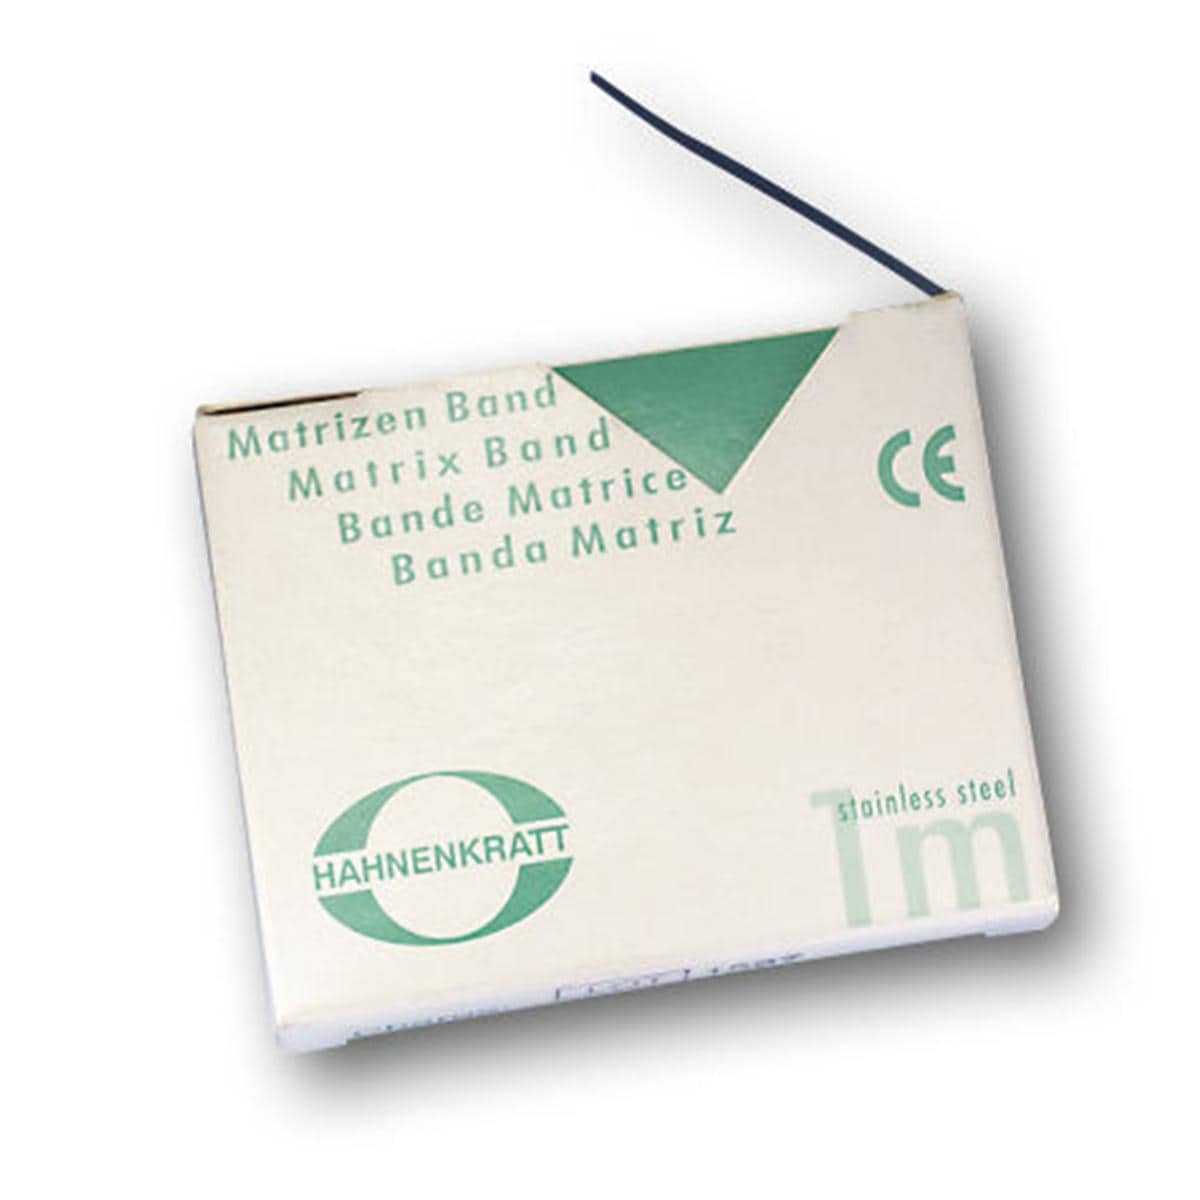 Matrizenband Hahnenkratt - Rolle 3 m - Breite 5 mm, Stärke 0,04 mm